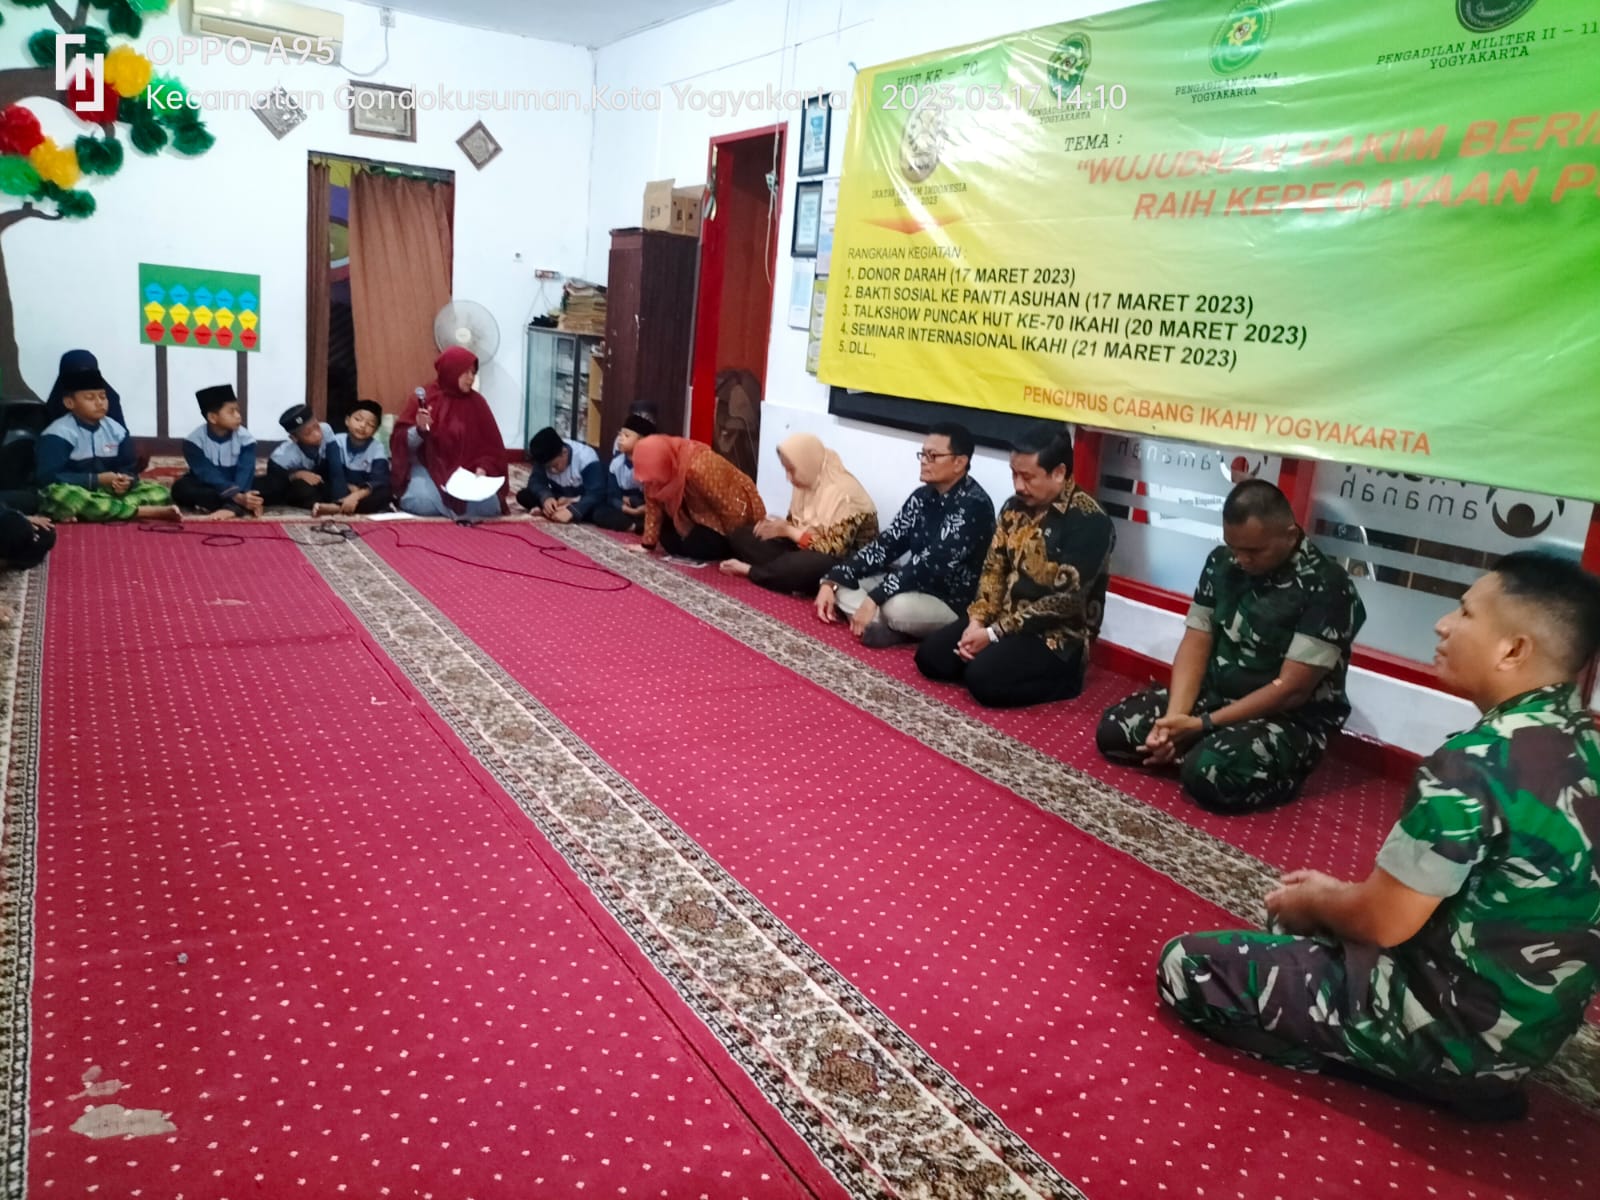 Memperingati HUT ke-70, IKAHI Cabang Yogyakarta Melaksanakan Bakti Sosial ke Panti Asuhan